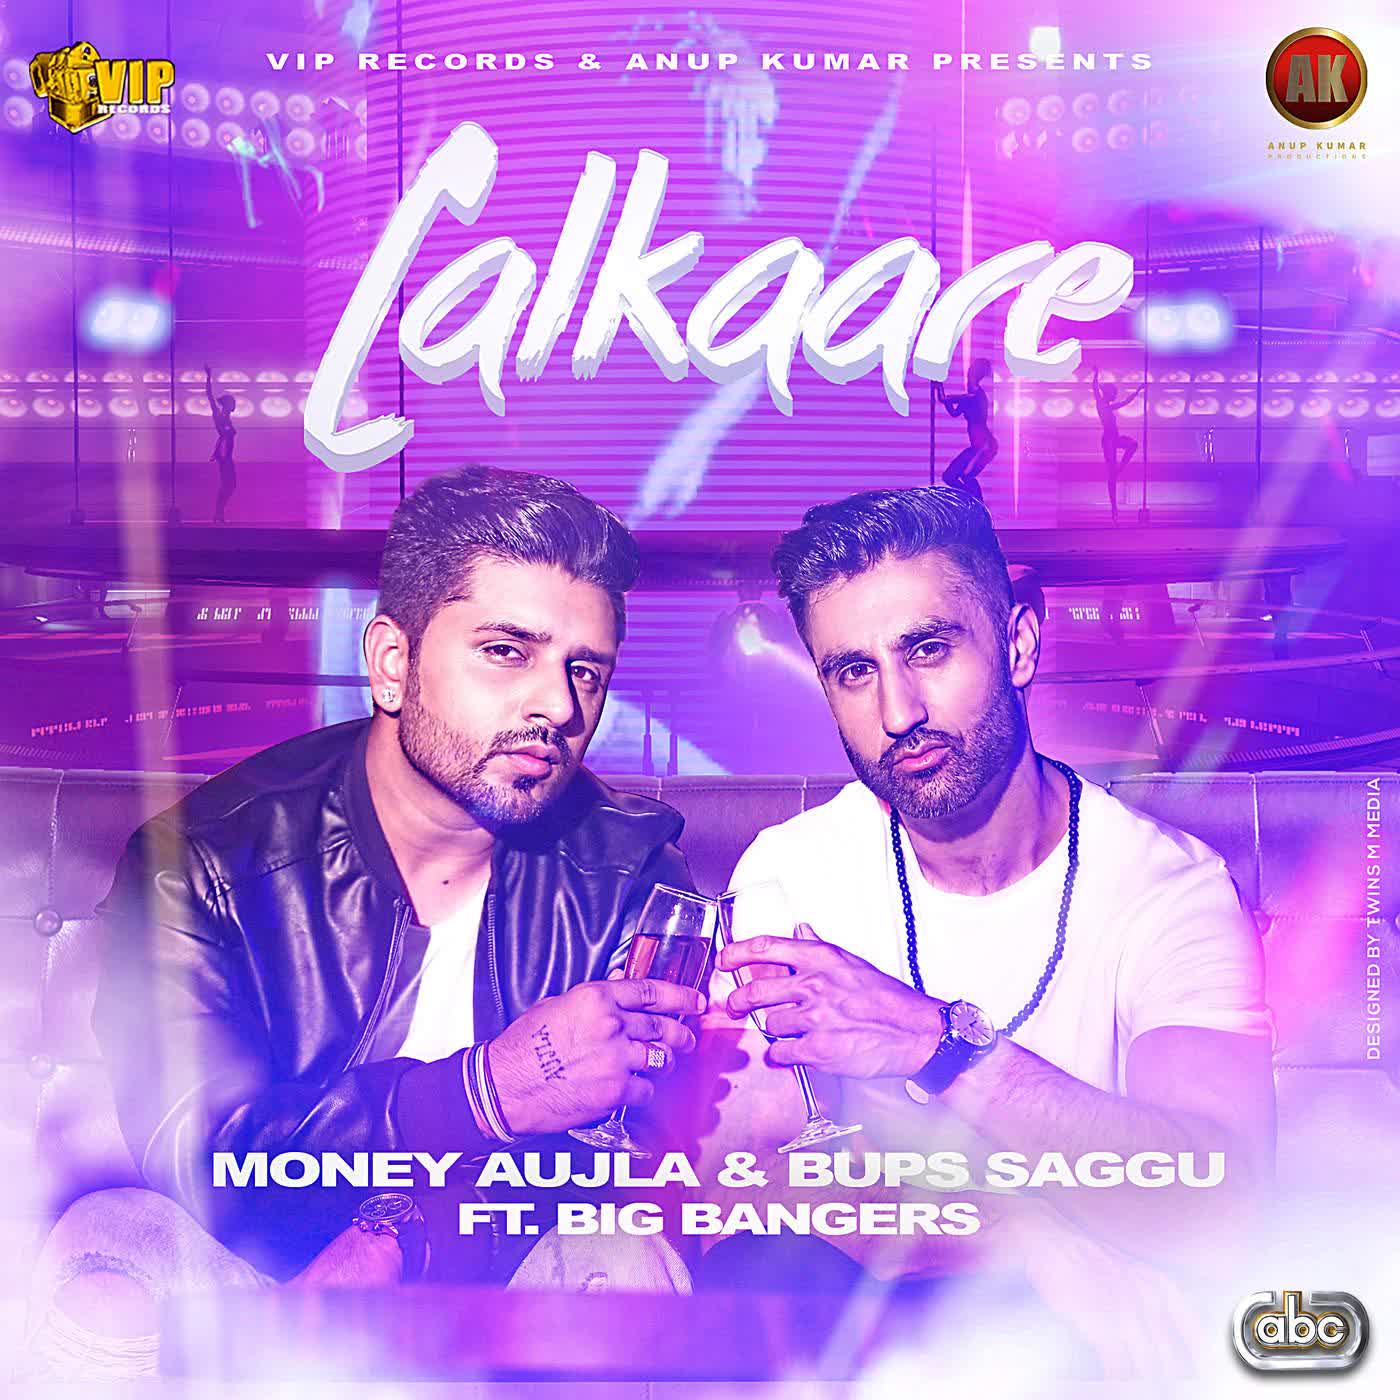 Lalkaare Money Aujla  Mp3 song download